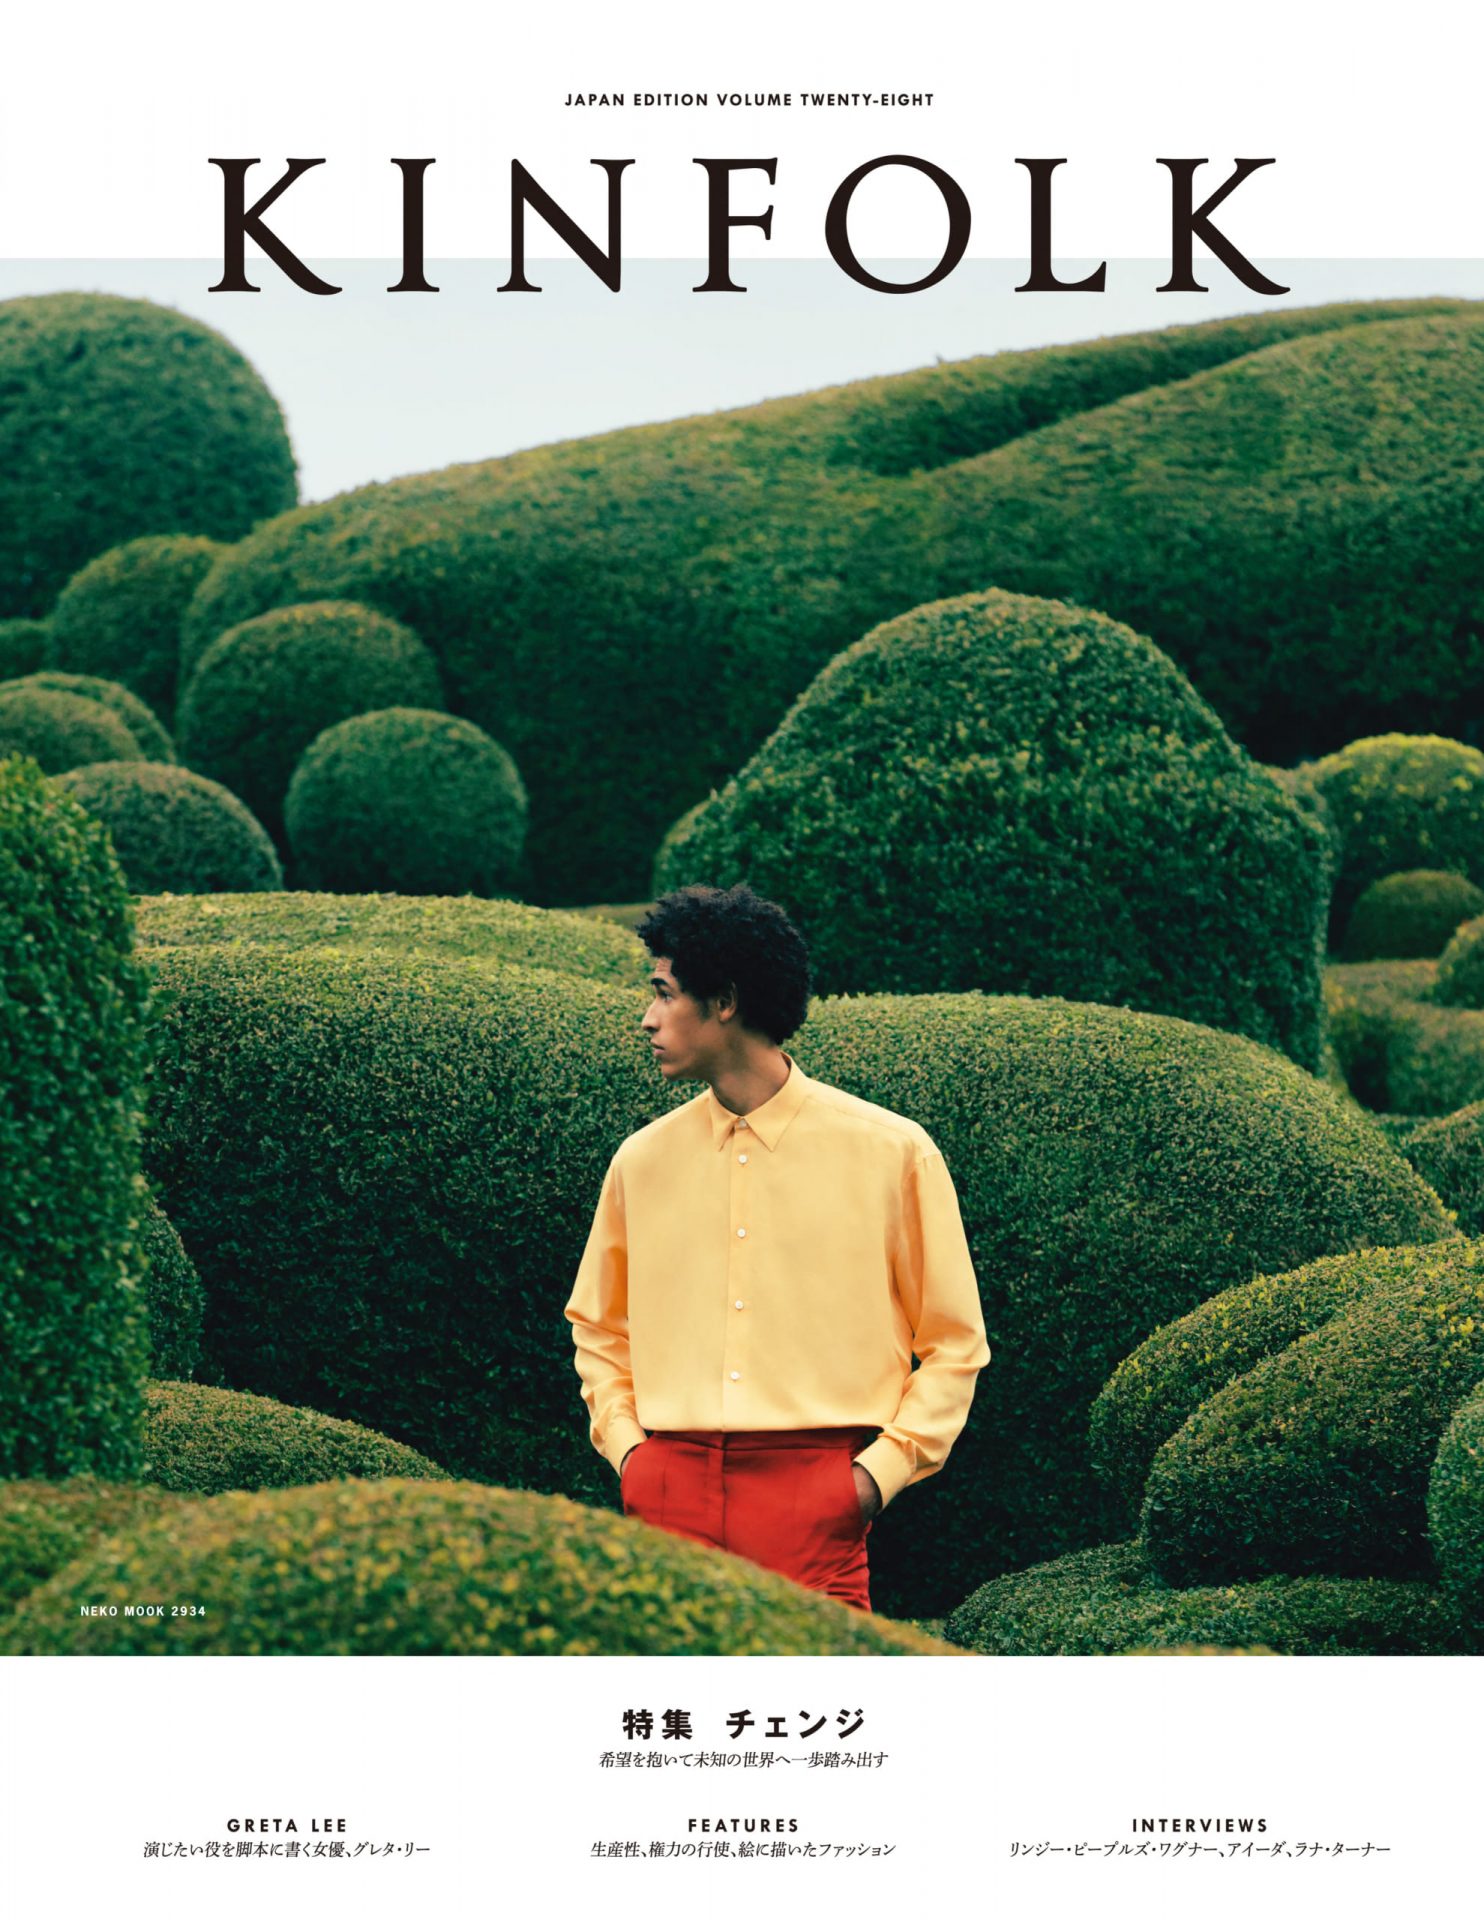 ホワイトブラウン 【No.1】KINFOLK JAPAN EDITION VOL.1 - 20 - 通販 